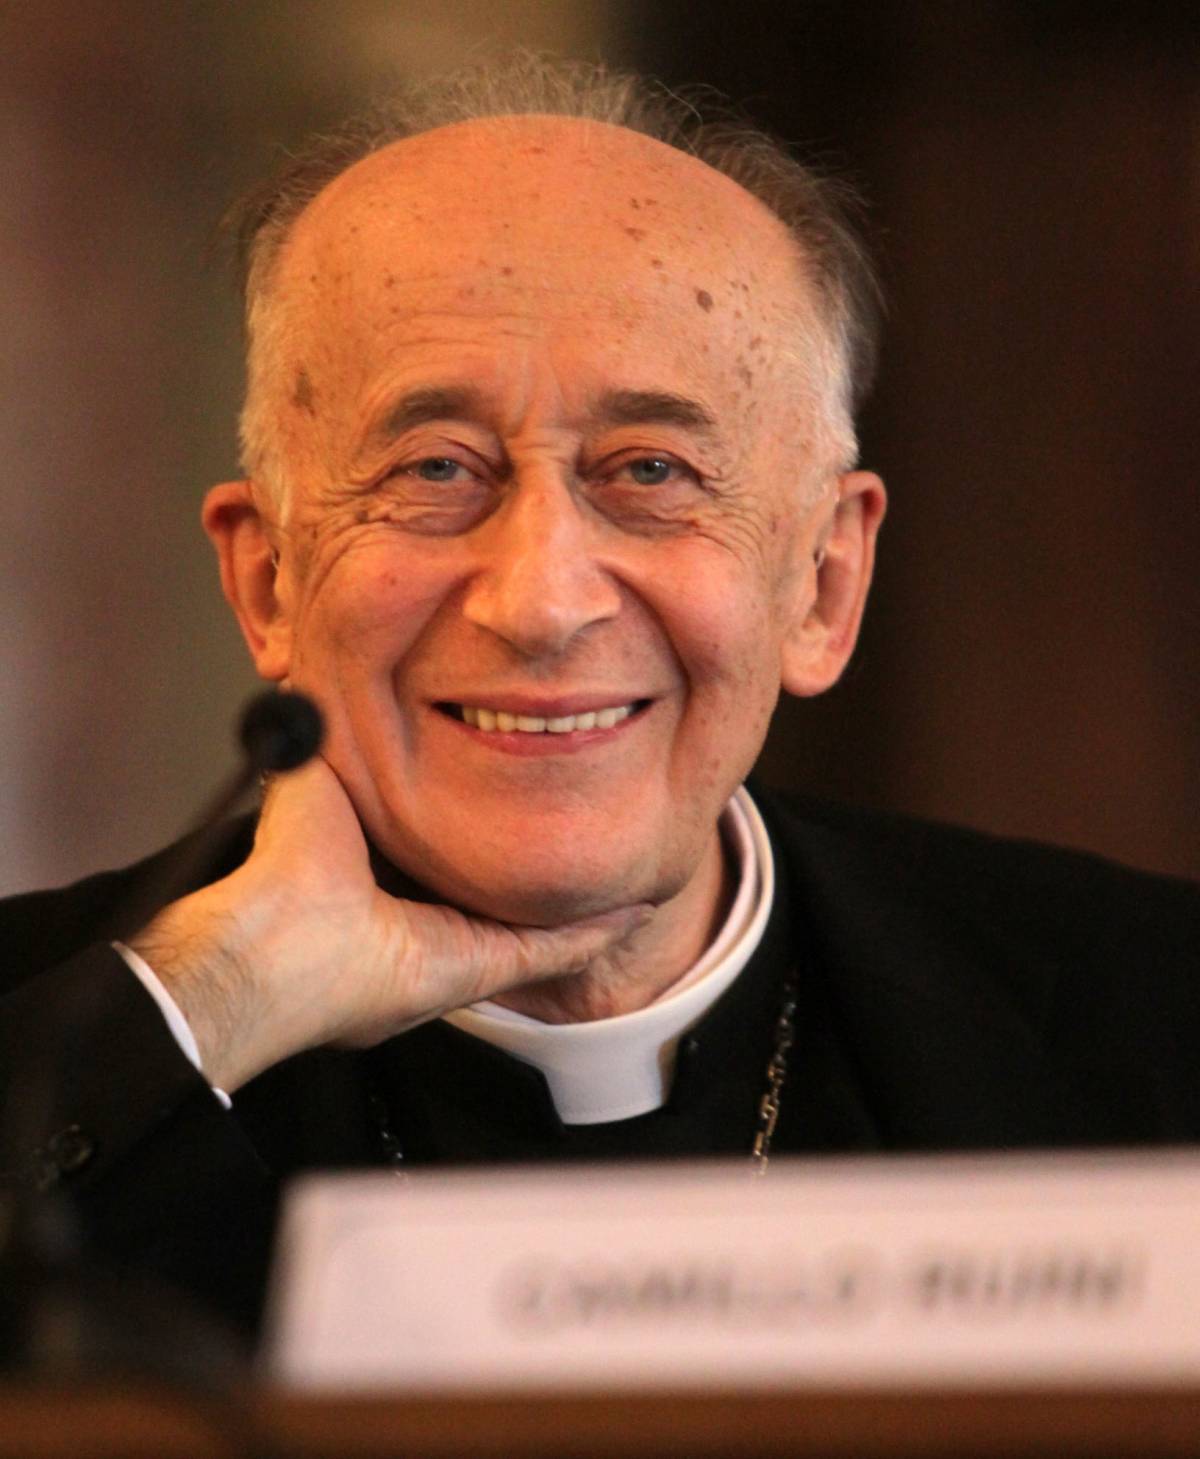 Il cardinale Camillo Ruini